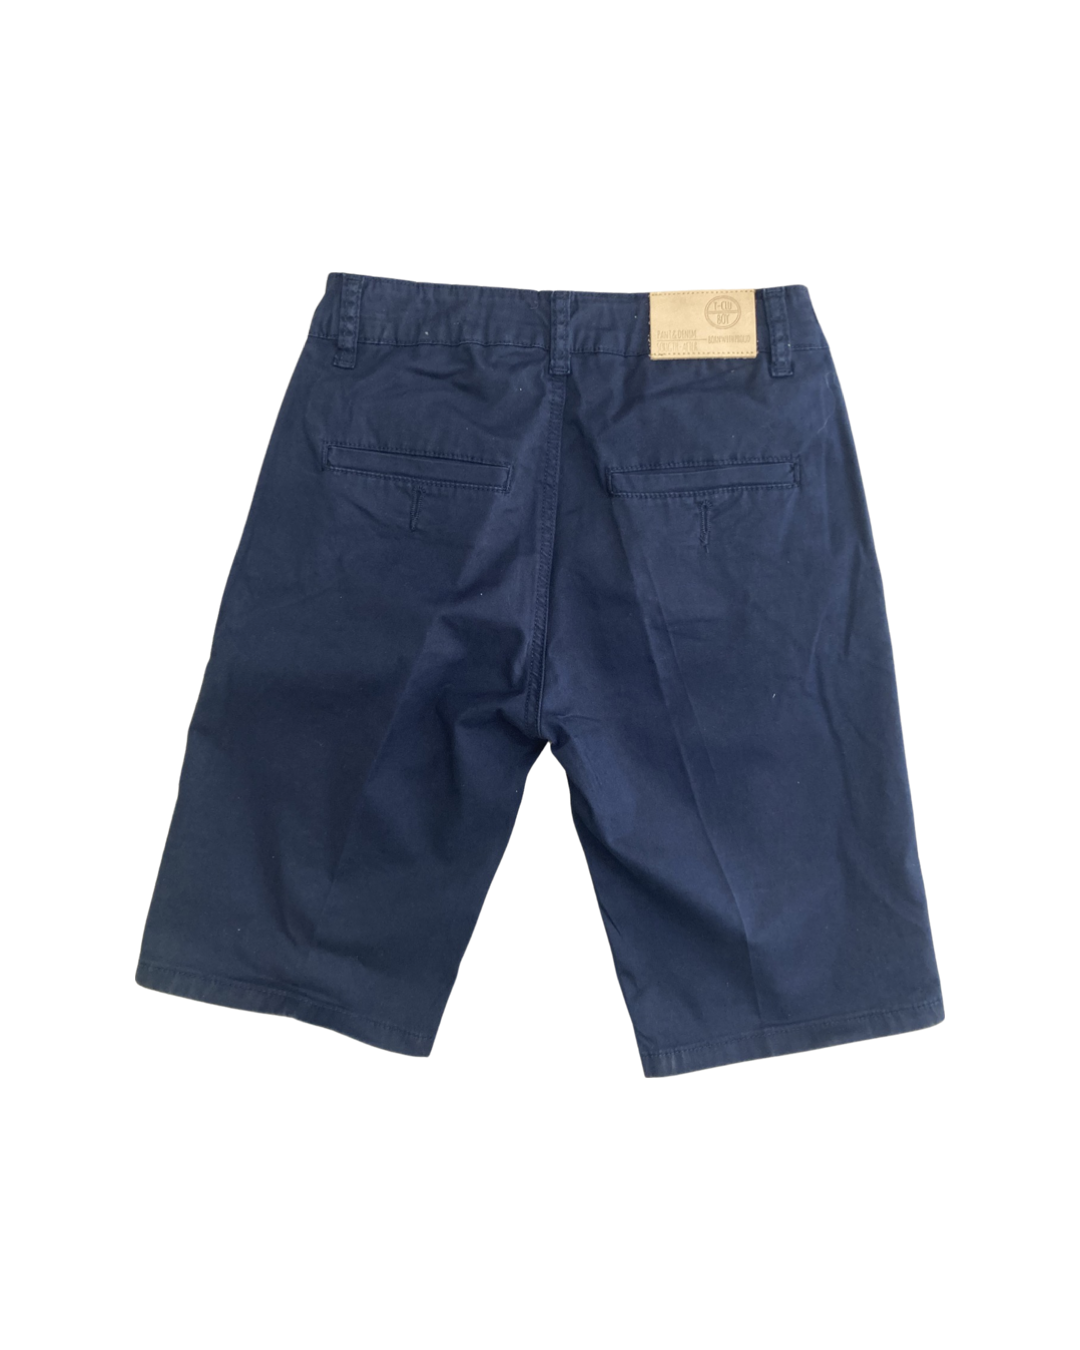 pantalone , Pantalone corto Navy per Ragazzo da 8anni a 16anni Y-Clu BY9096 - BabyBimbo 0-16, abbigliamento bambini